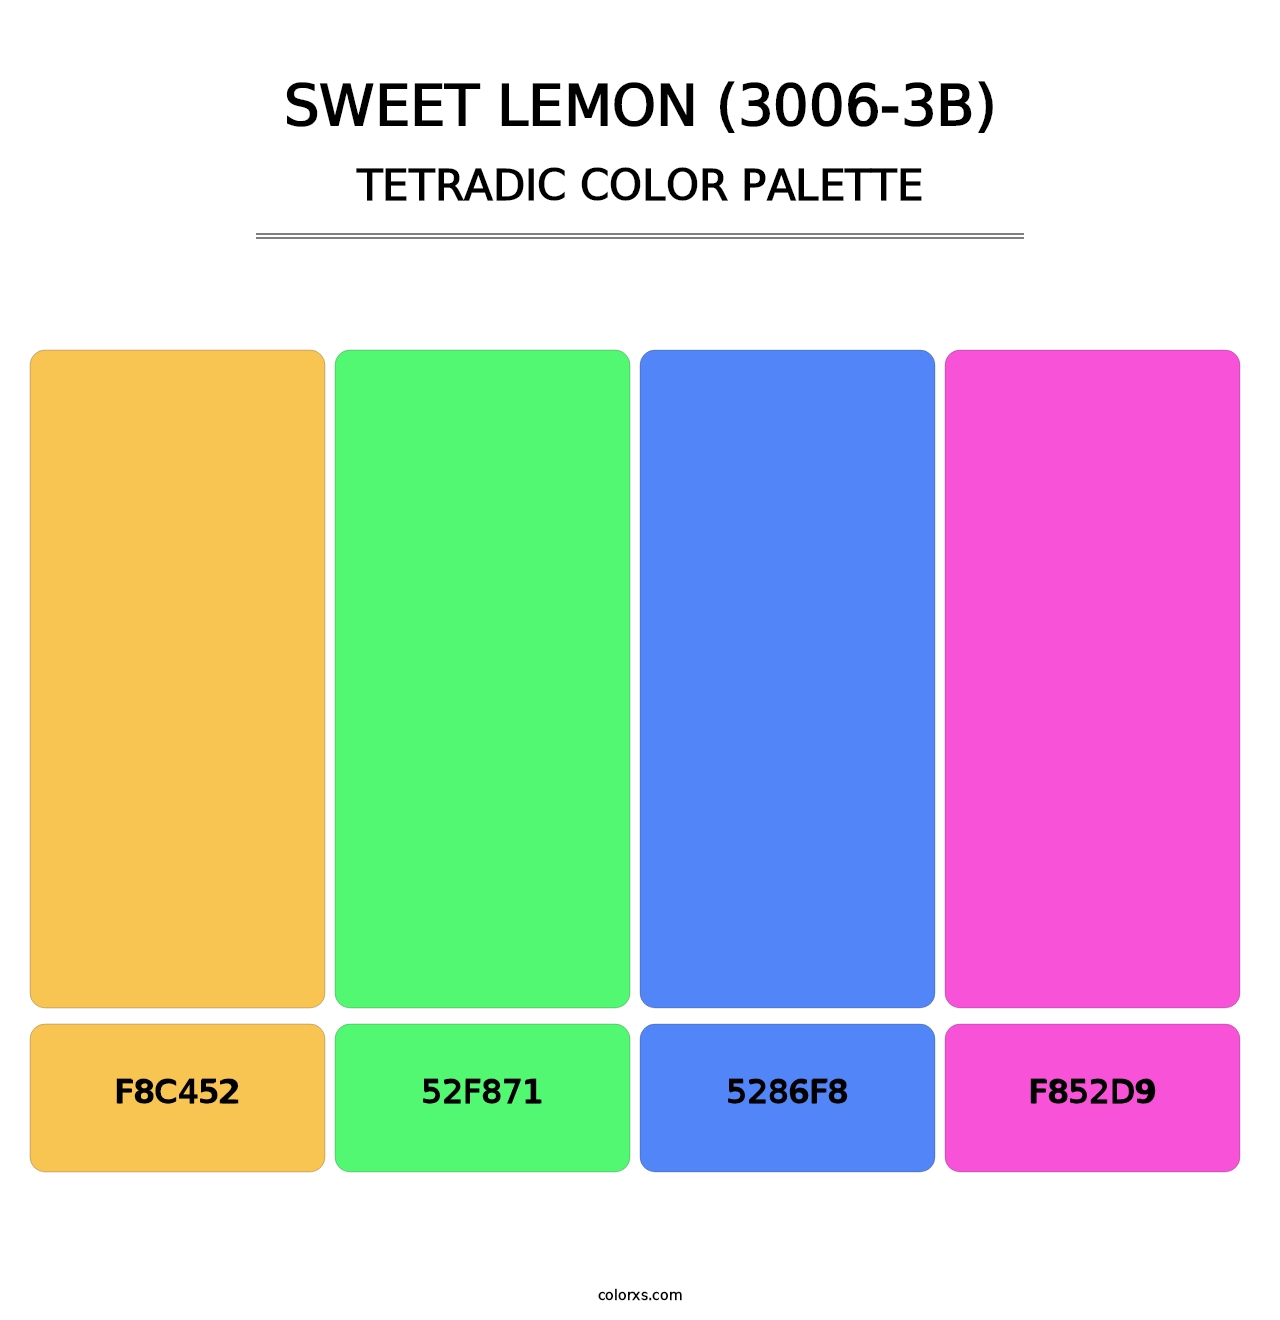 Sweet Lemon (3006-3B) - Tetradic Color Palette